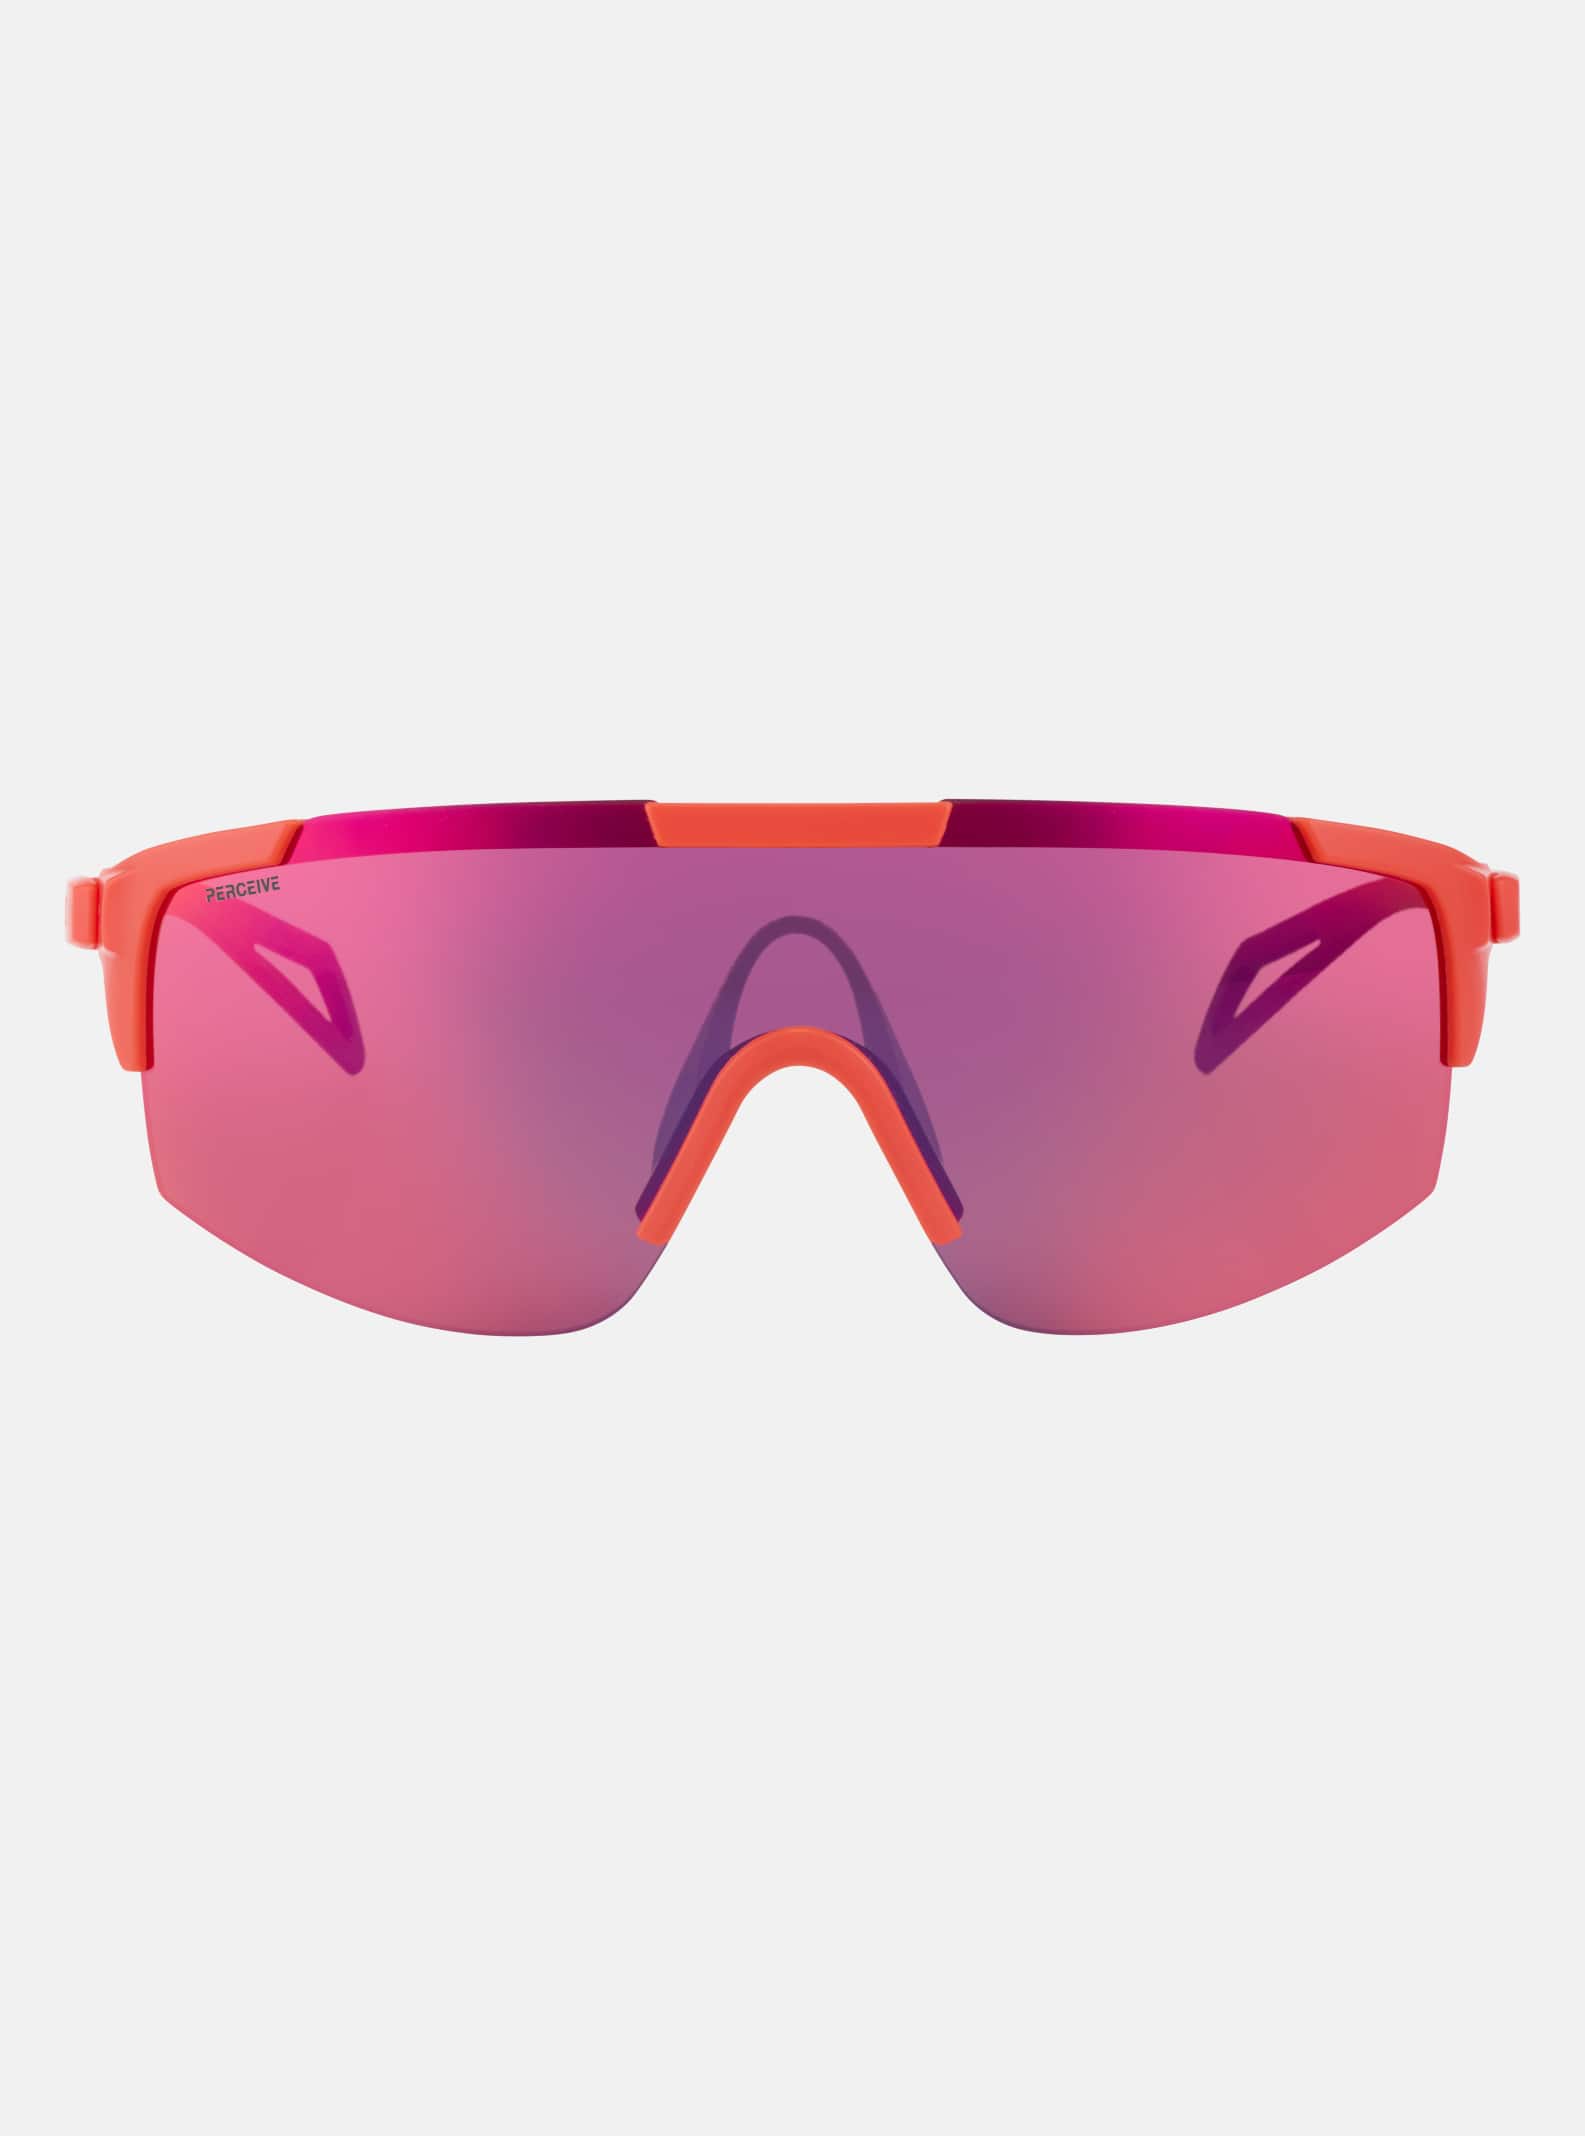 New Anon Josie Sunglasses Gloss Tortoise Frames/ Brown Lenses by Burton 